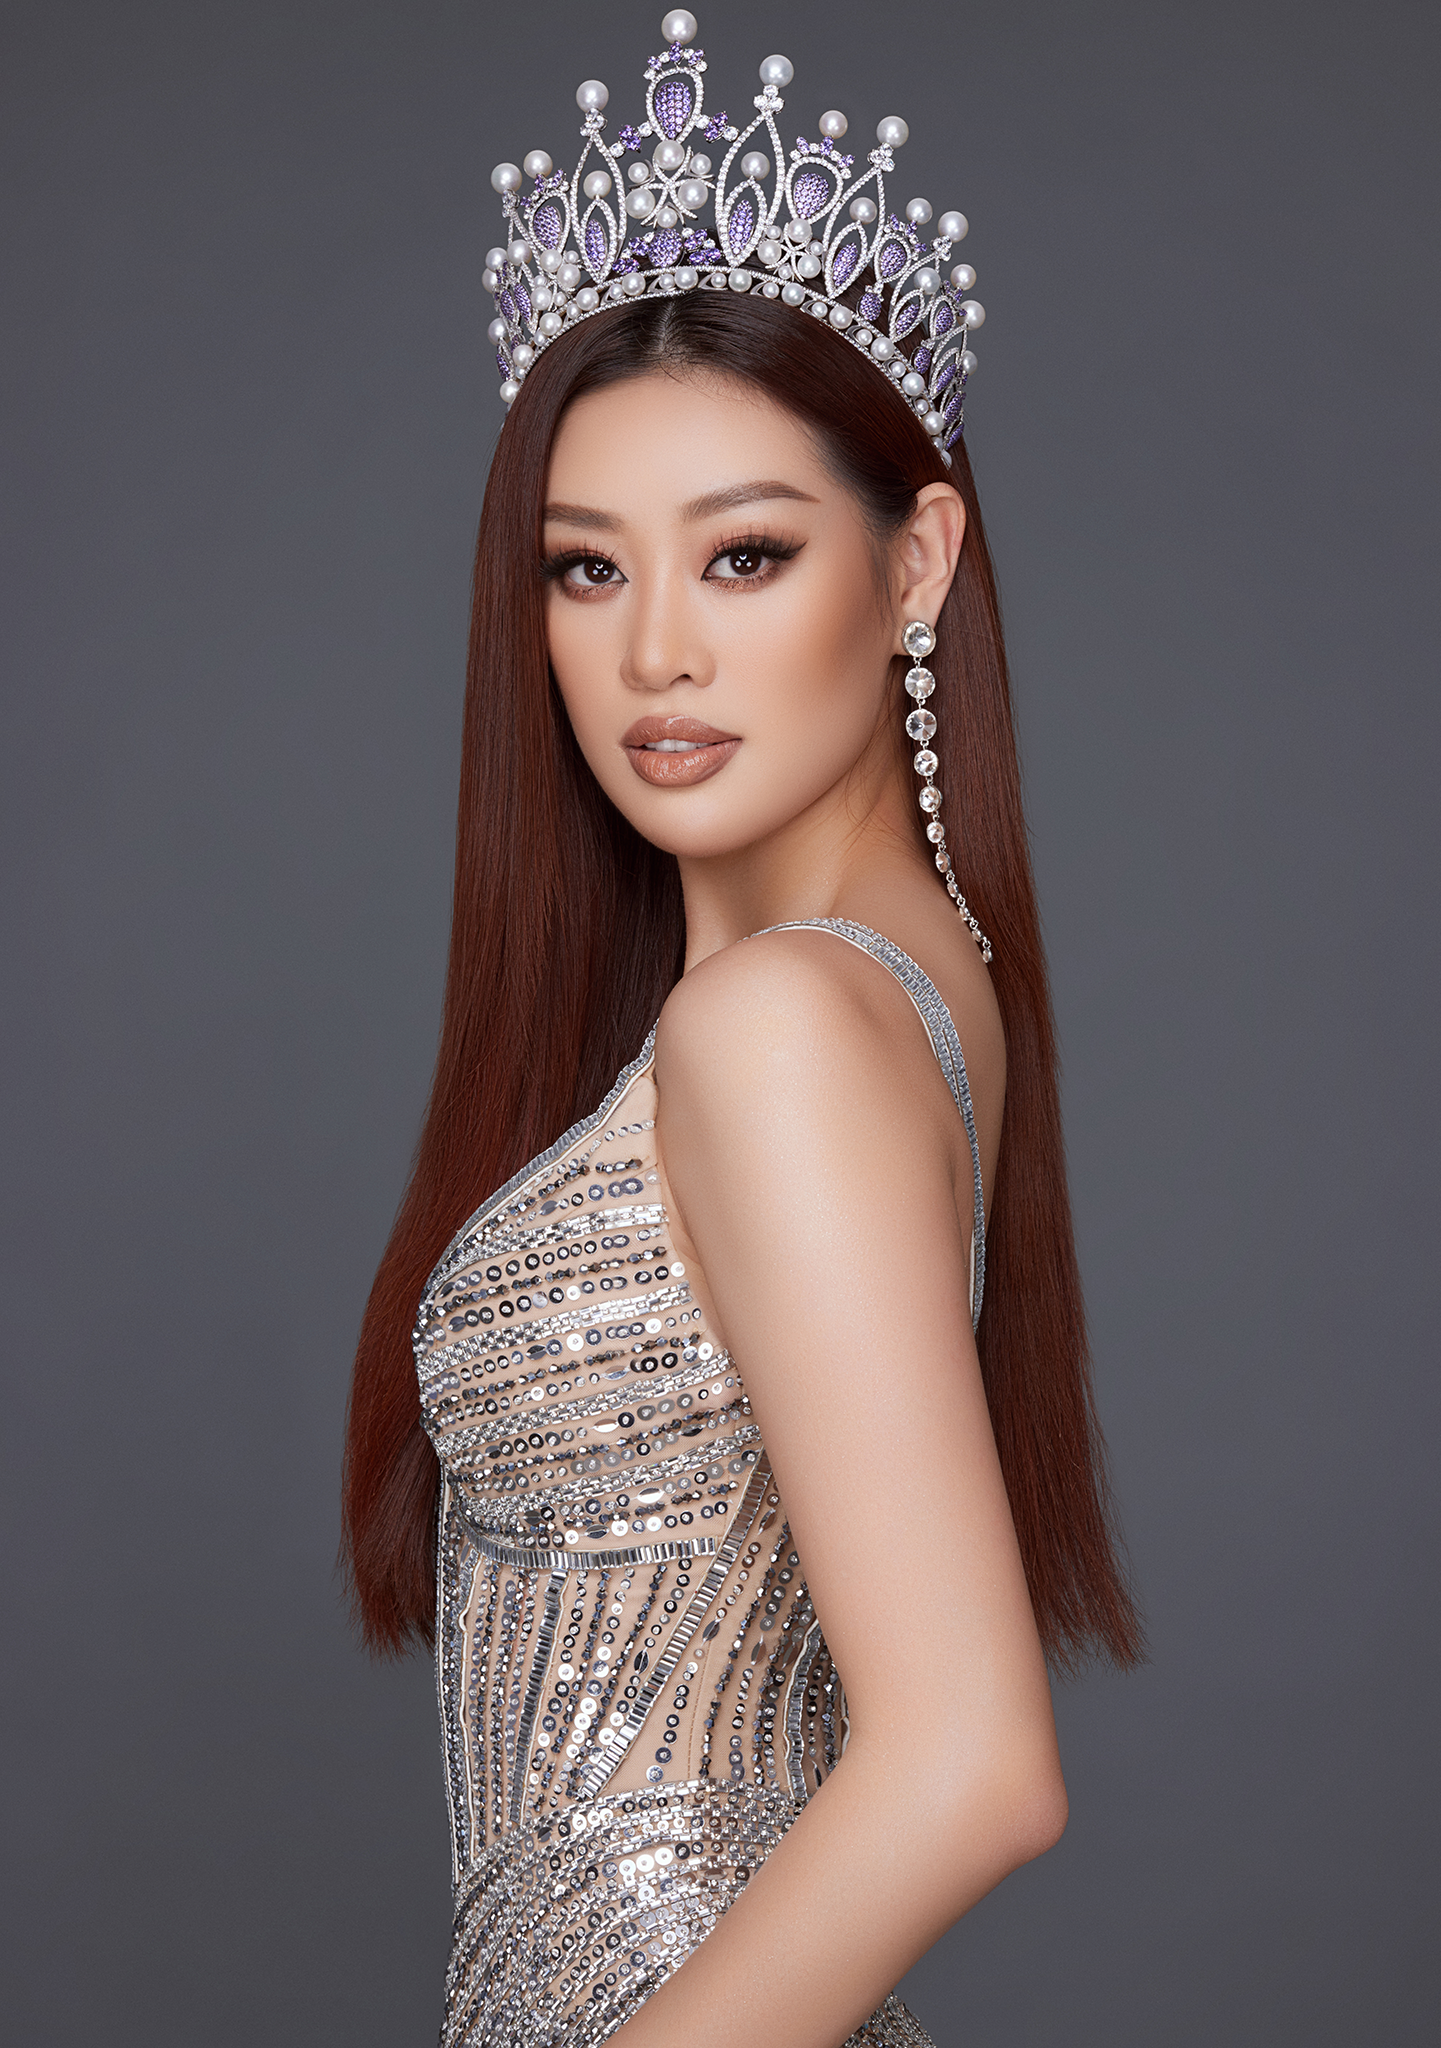 Hoa hậu Khánh Vân quyến rũ bất ngờ kỷ niệm 2 năm đăng quang